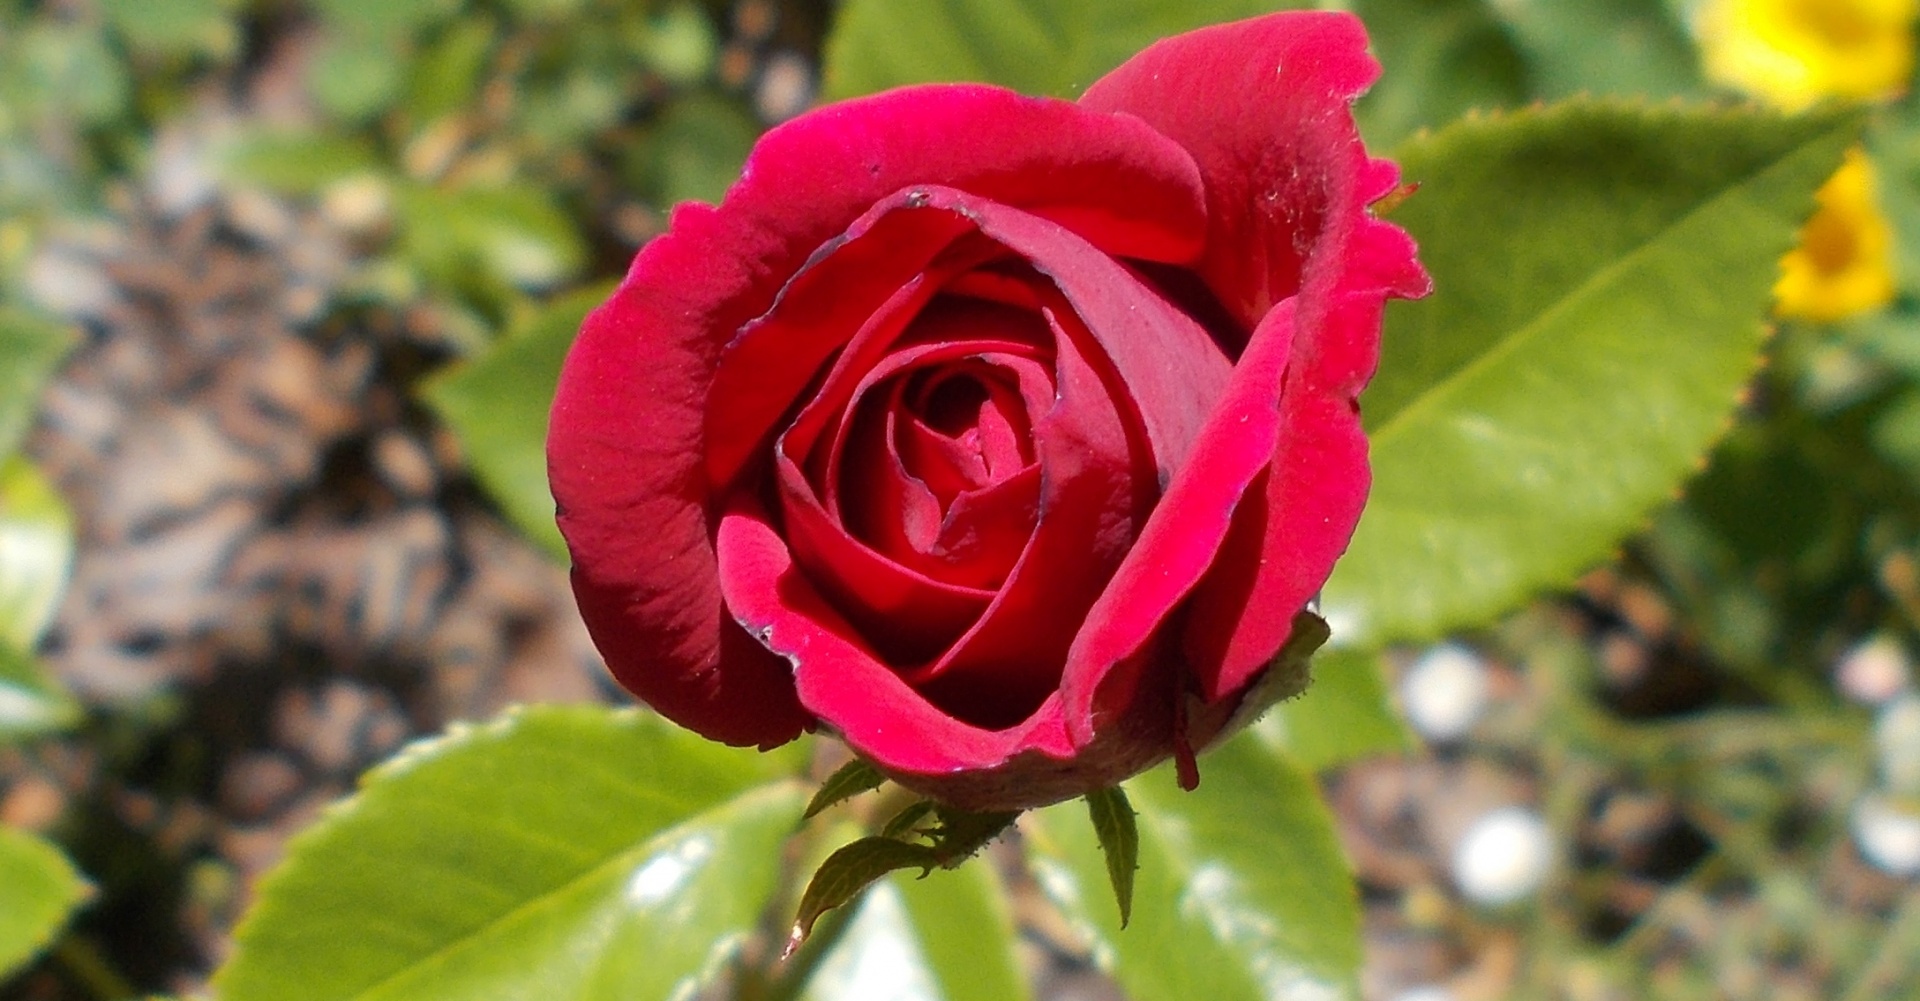 red rose rosebud free photo